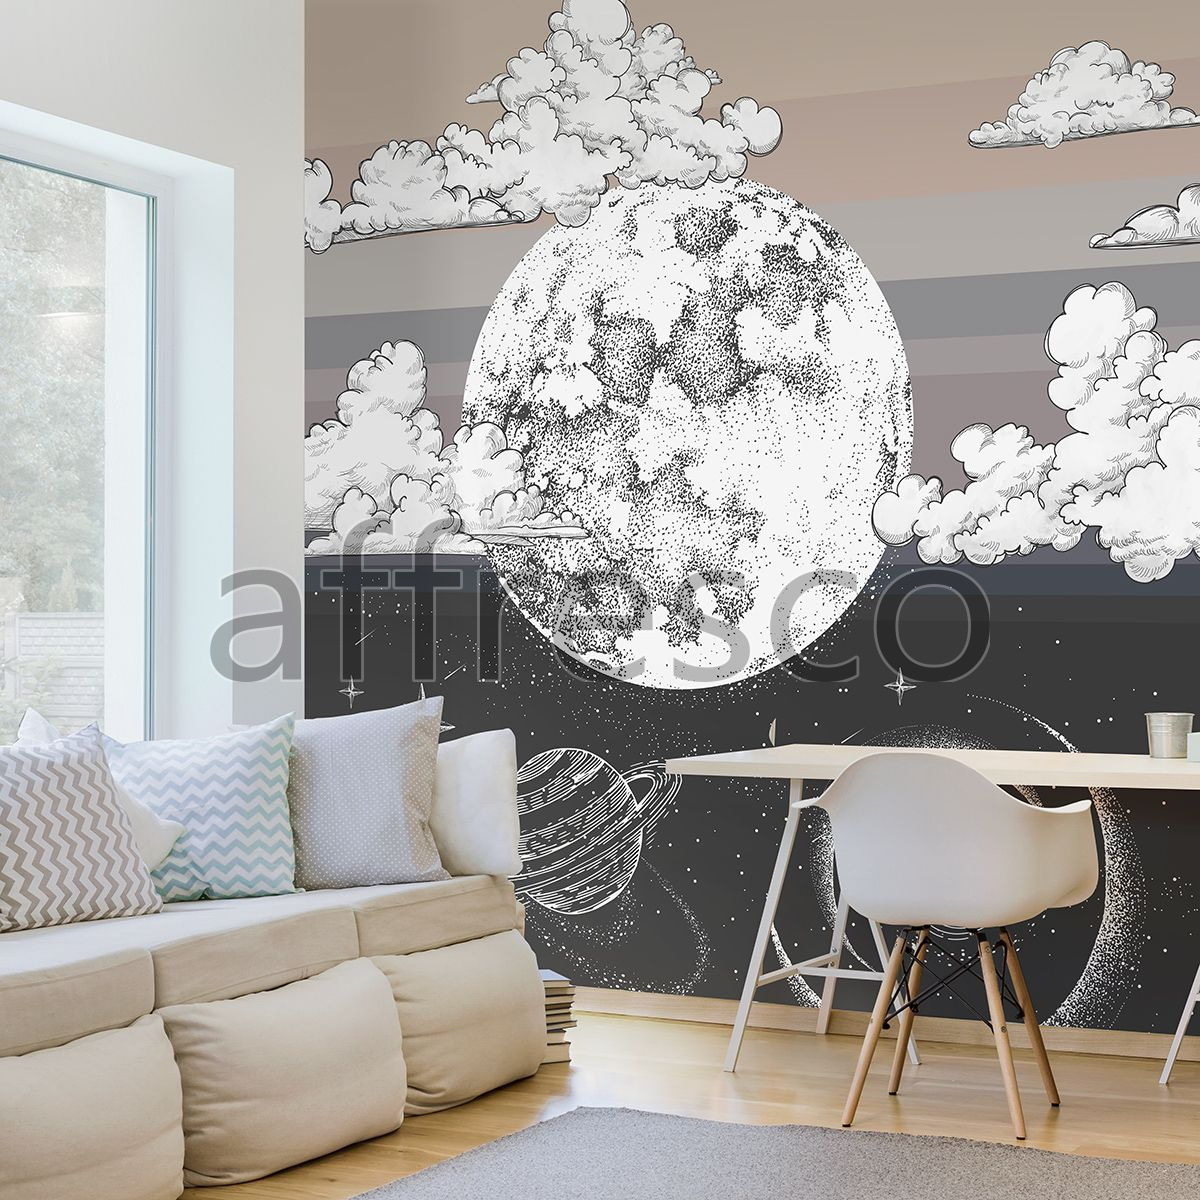 Фотообои мечты в облаках, Арт. AF2214-COL1, фабрика обоев Affresco